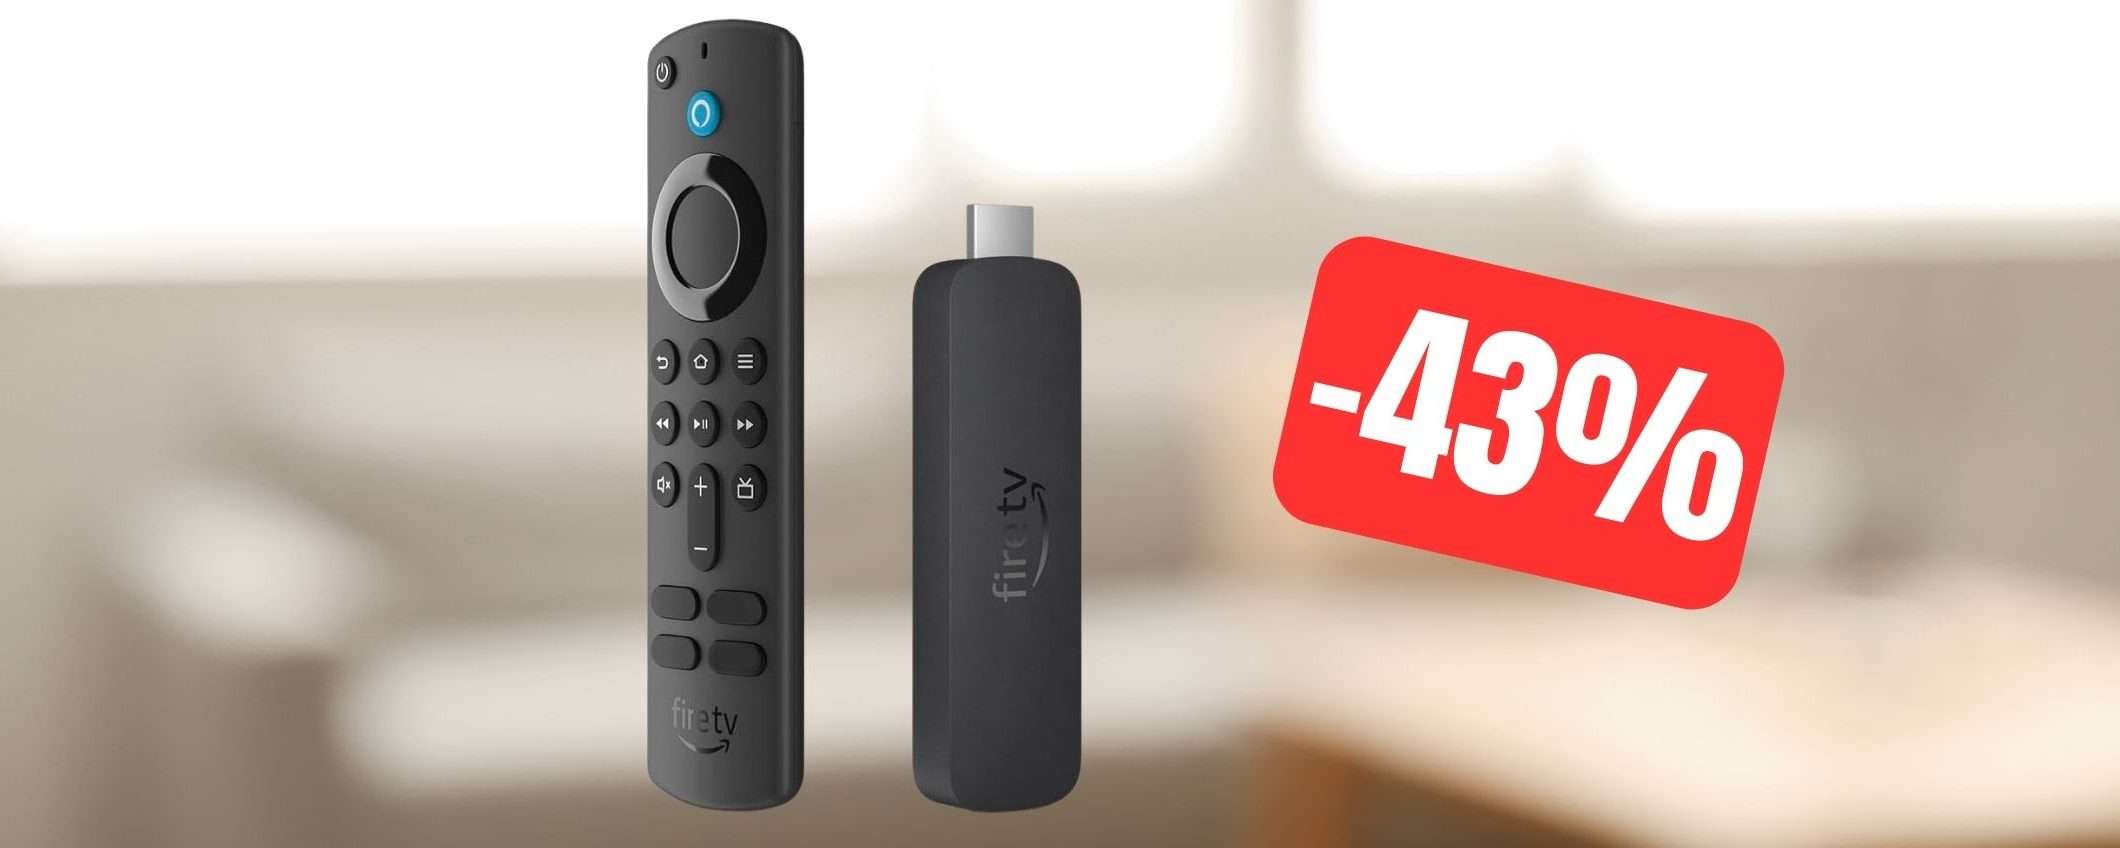 Nuovo Fire TV Stick 4K di Amazon: il prezzo CROLLA (-43%)